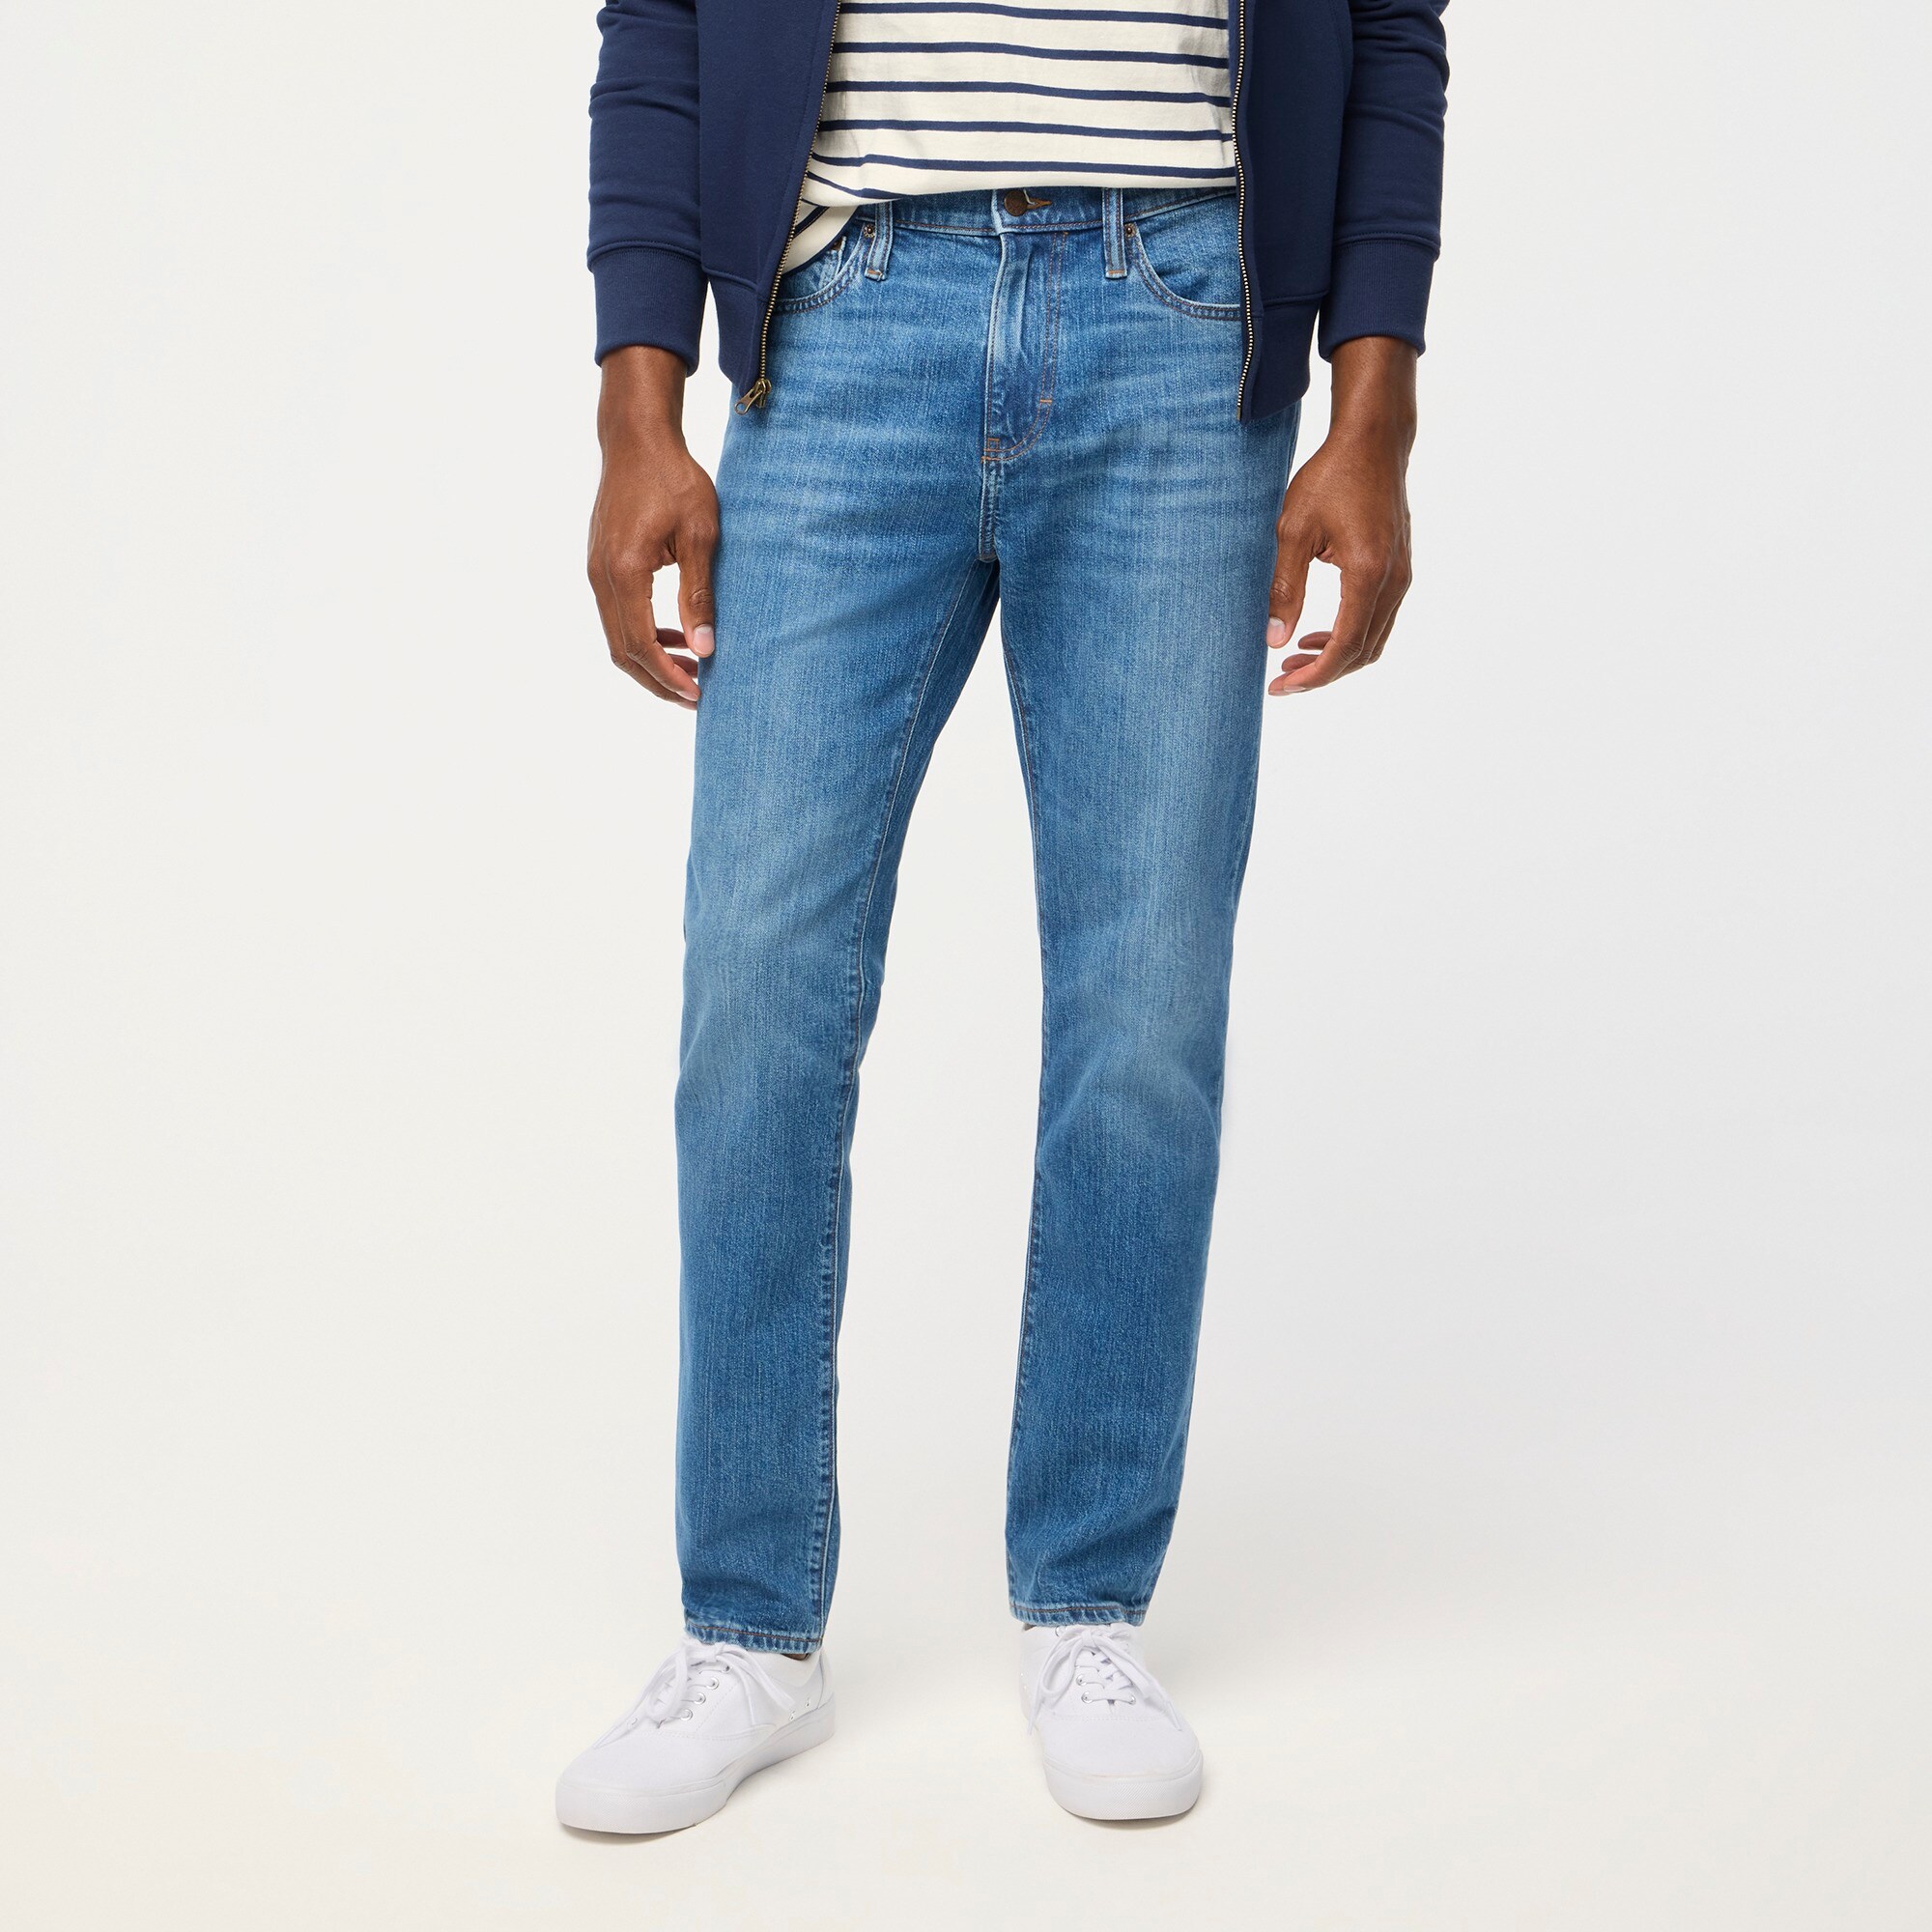  Slim-fit jean in vintage flex